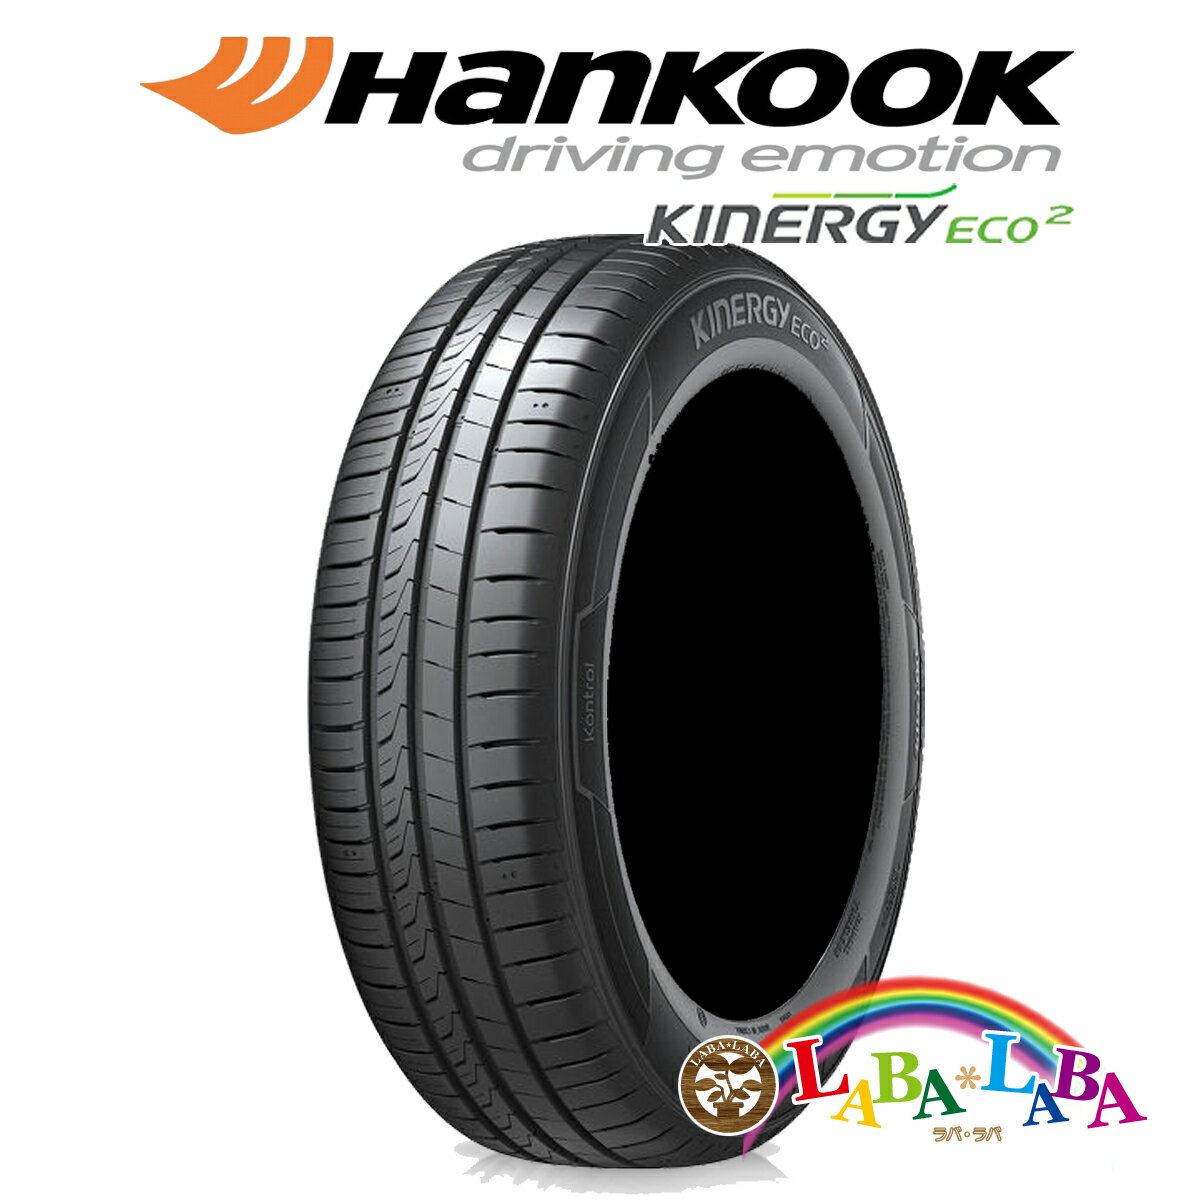 HANKOOK ハンコック Kinergy Eco 2 キナジー エコ K435 175/65R15 84H サマータイヤ 4本セット